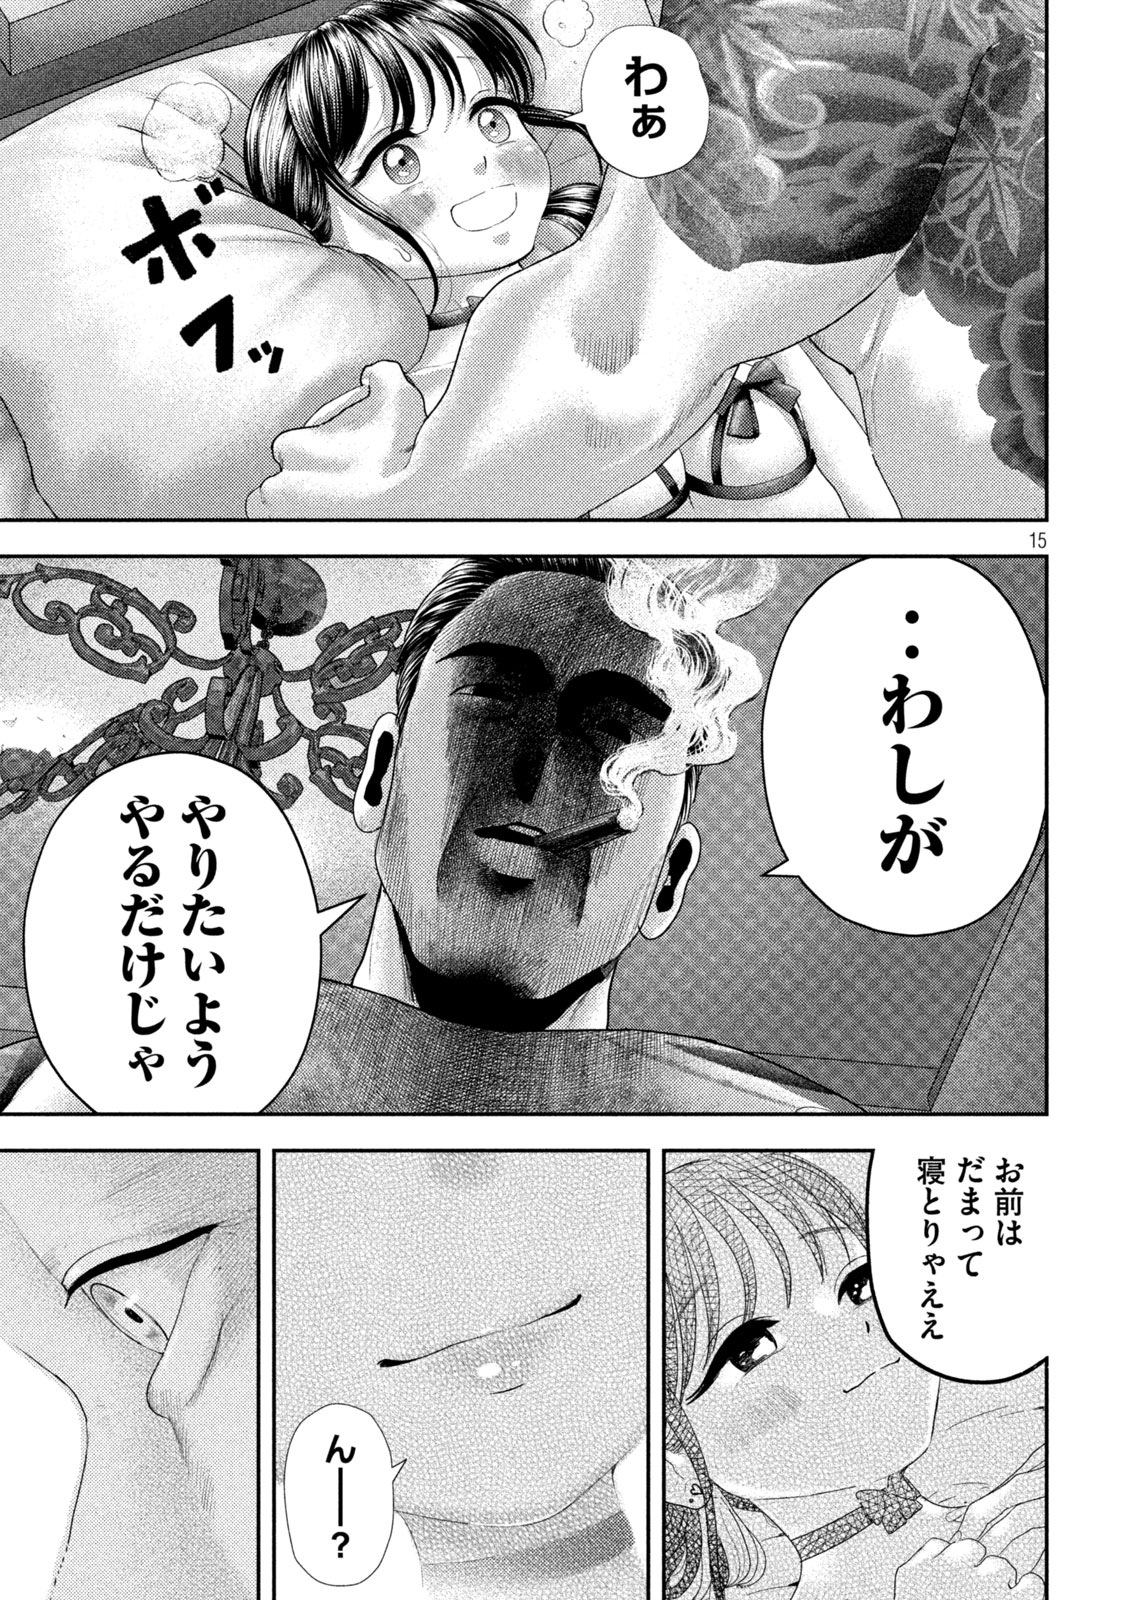 Nezumi no Koi - Chapter 30 - Page 15